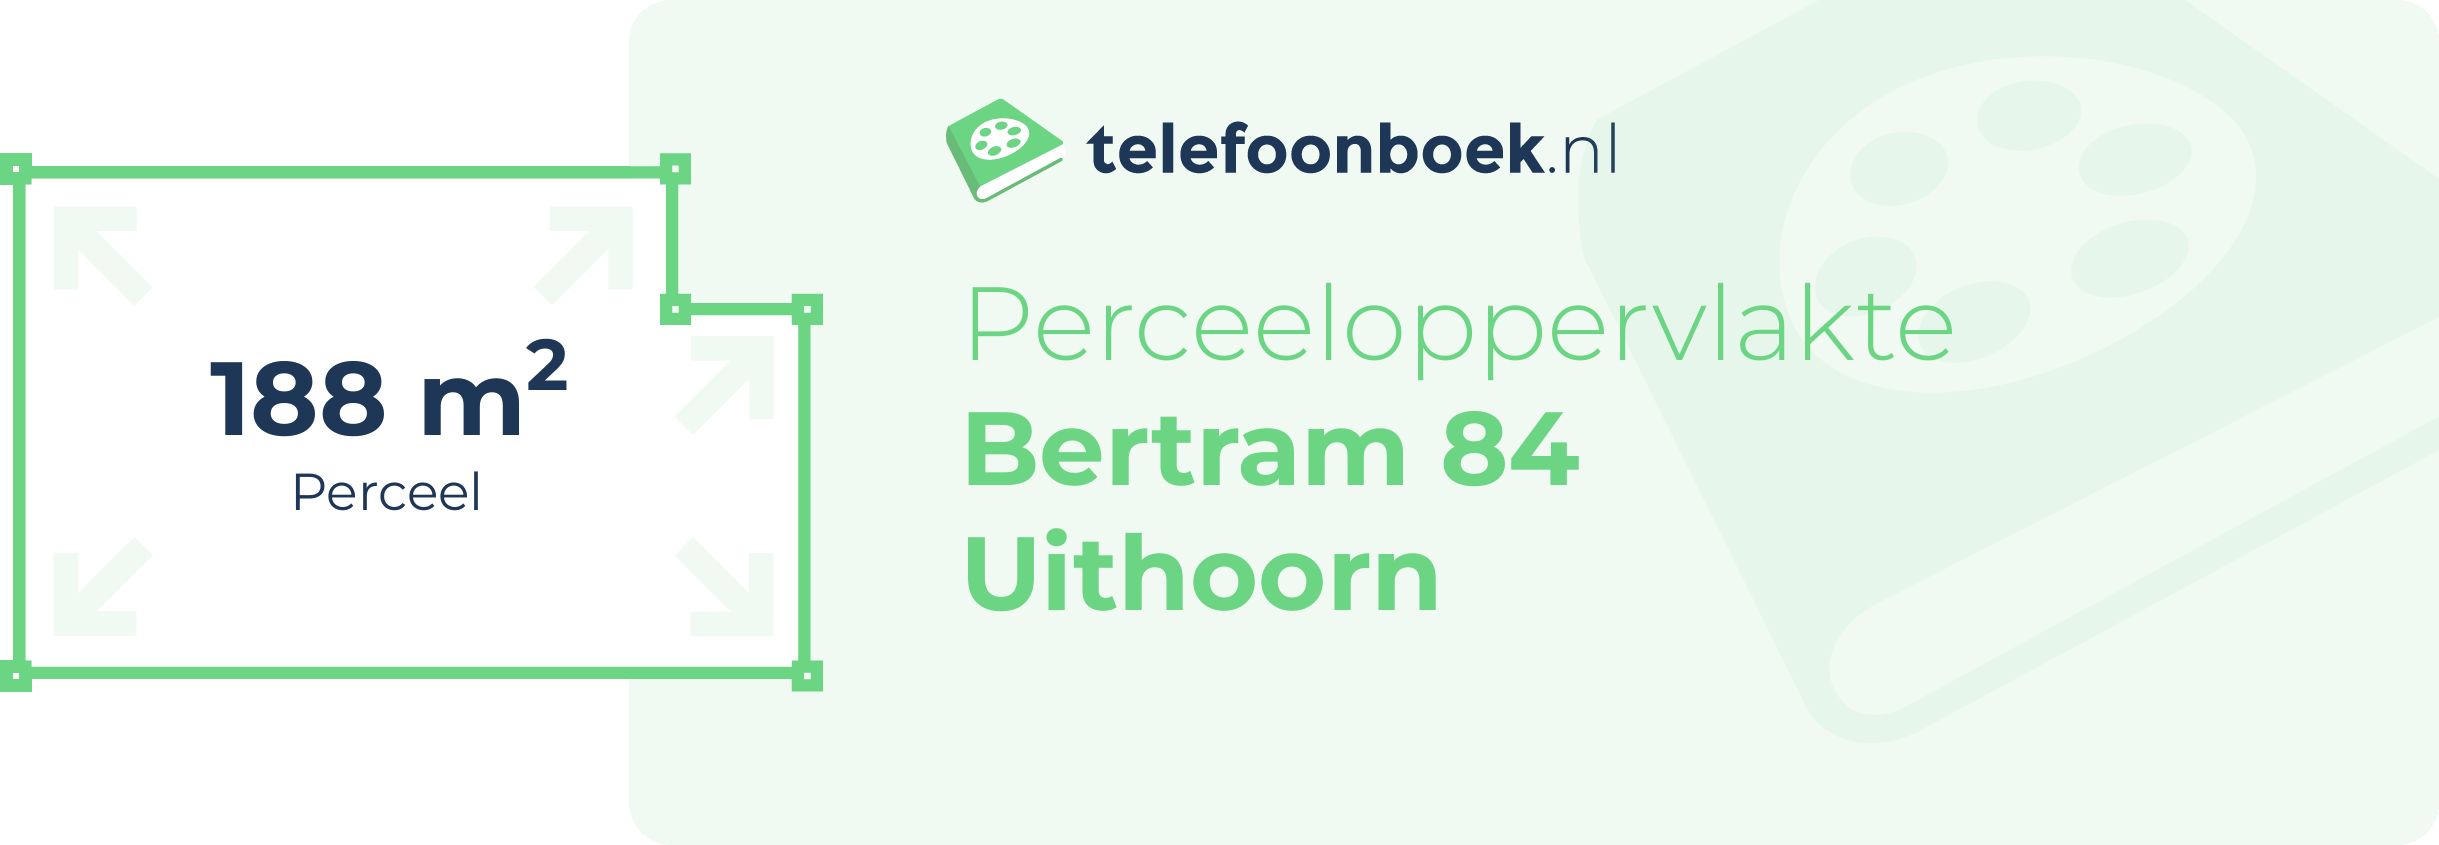 Perceeloppervlakte Bertram 84 Uithoorn